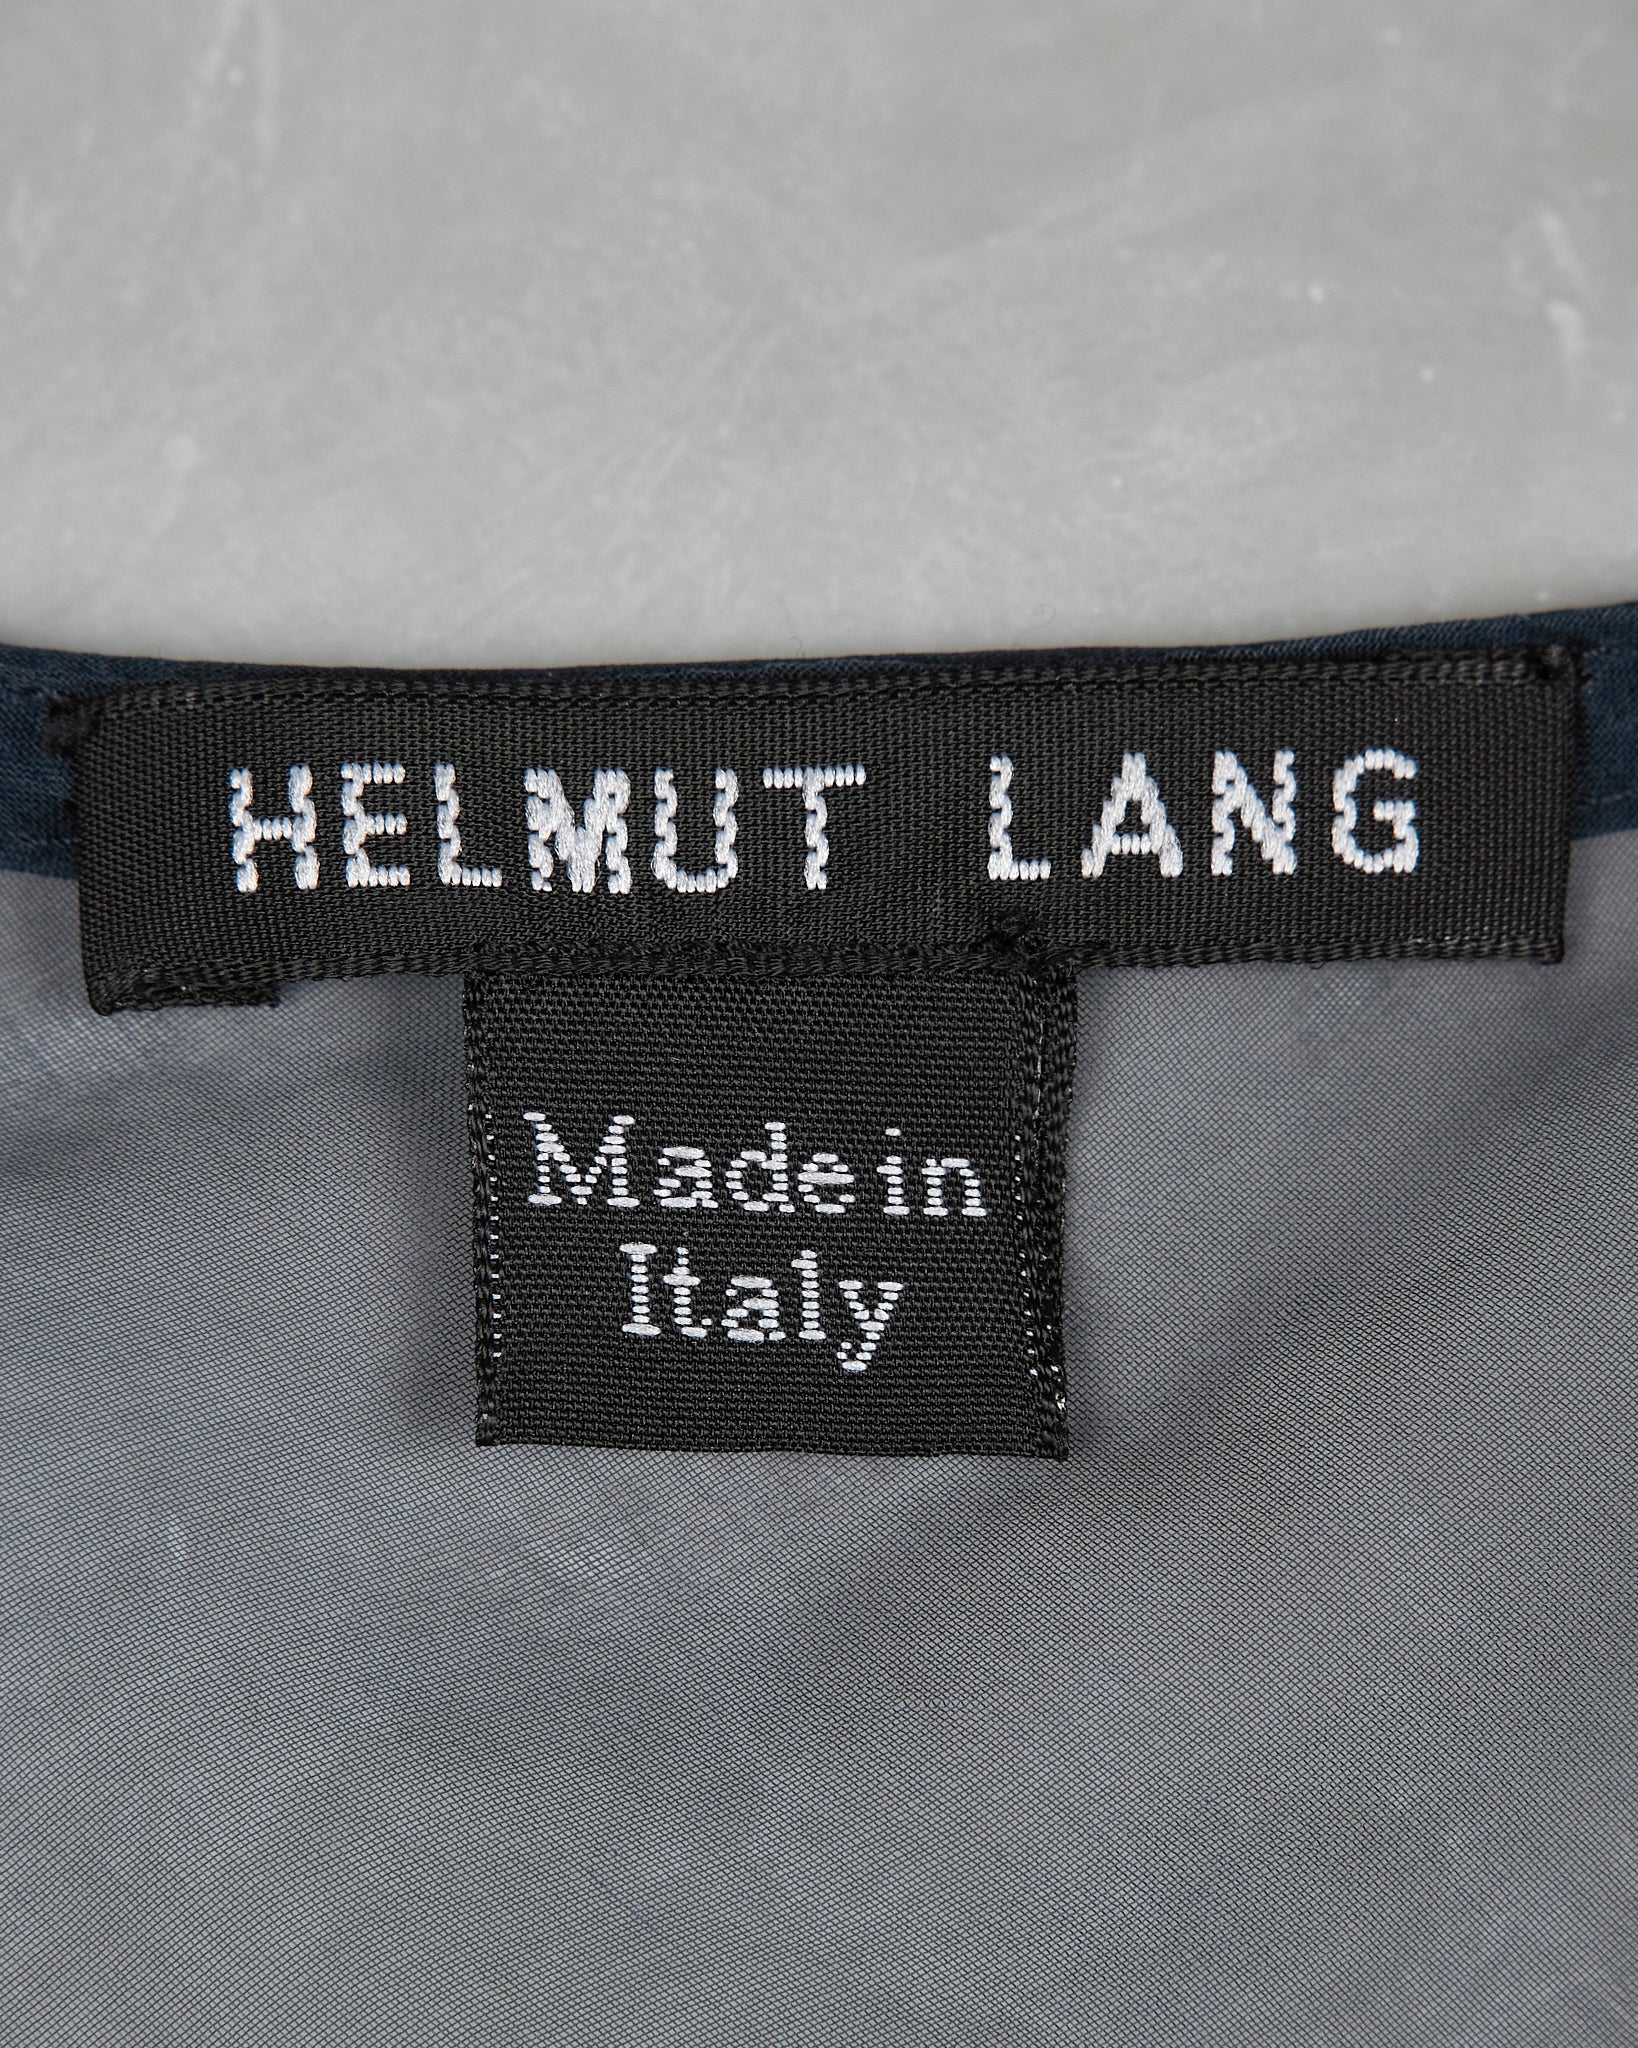 Helmut Lang Sheer Sleeveless Top - SS00 tag photo